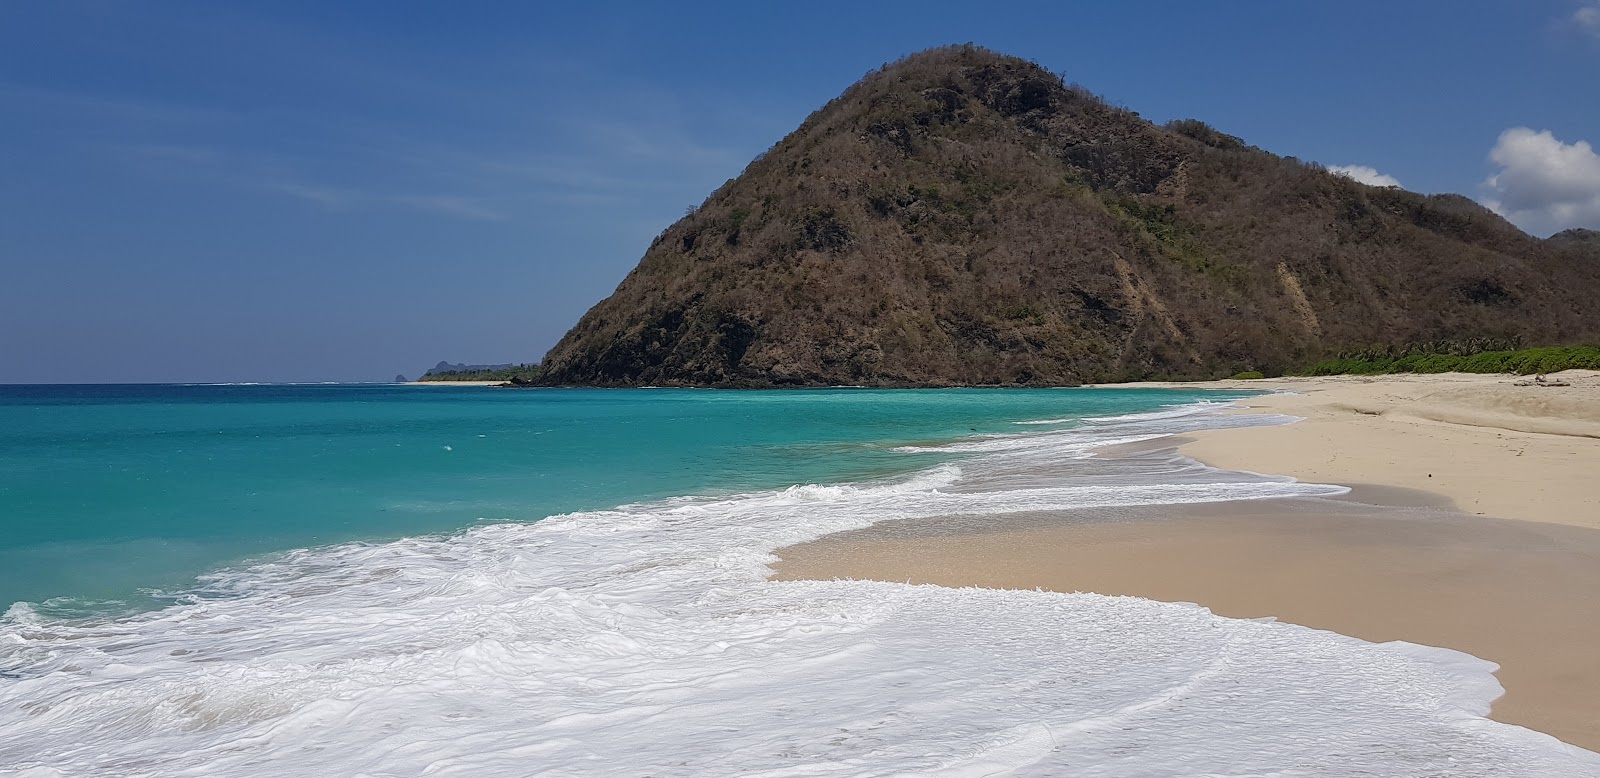 Foto von Tomang-Omang Beach mit feiner weißer sand Oberfläche